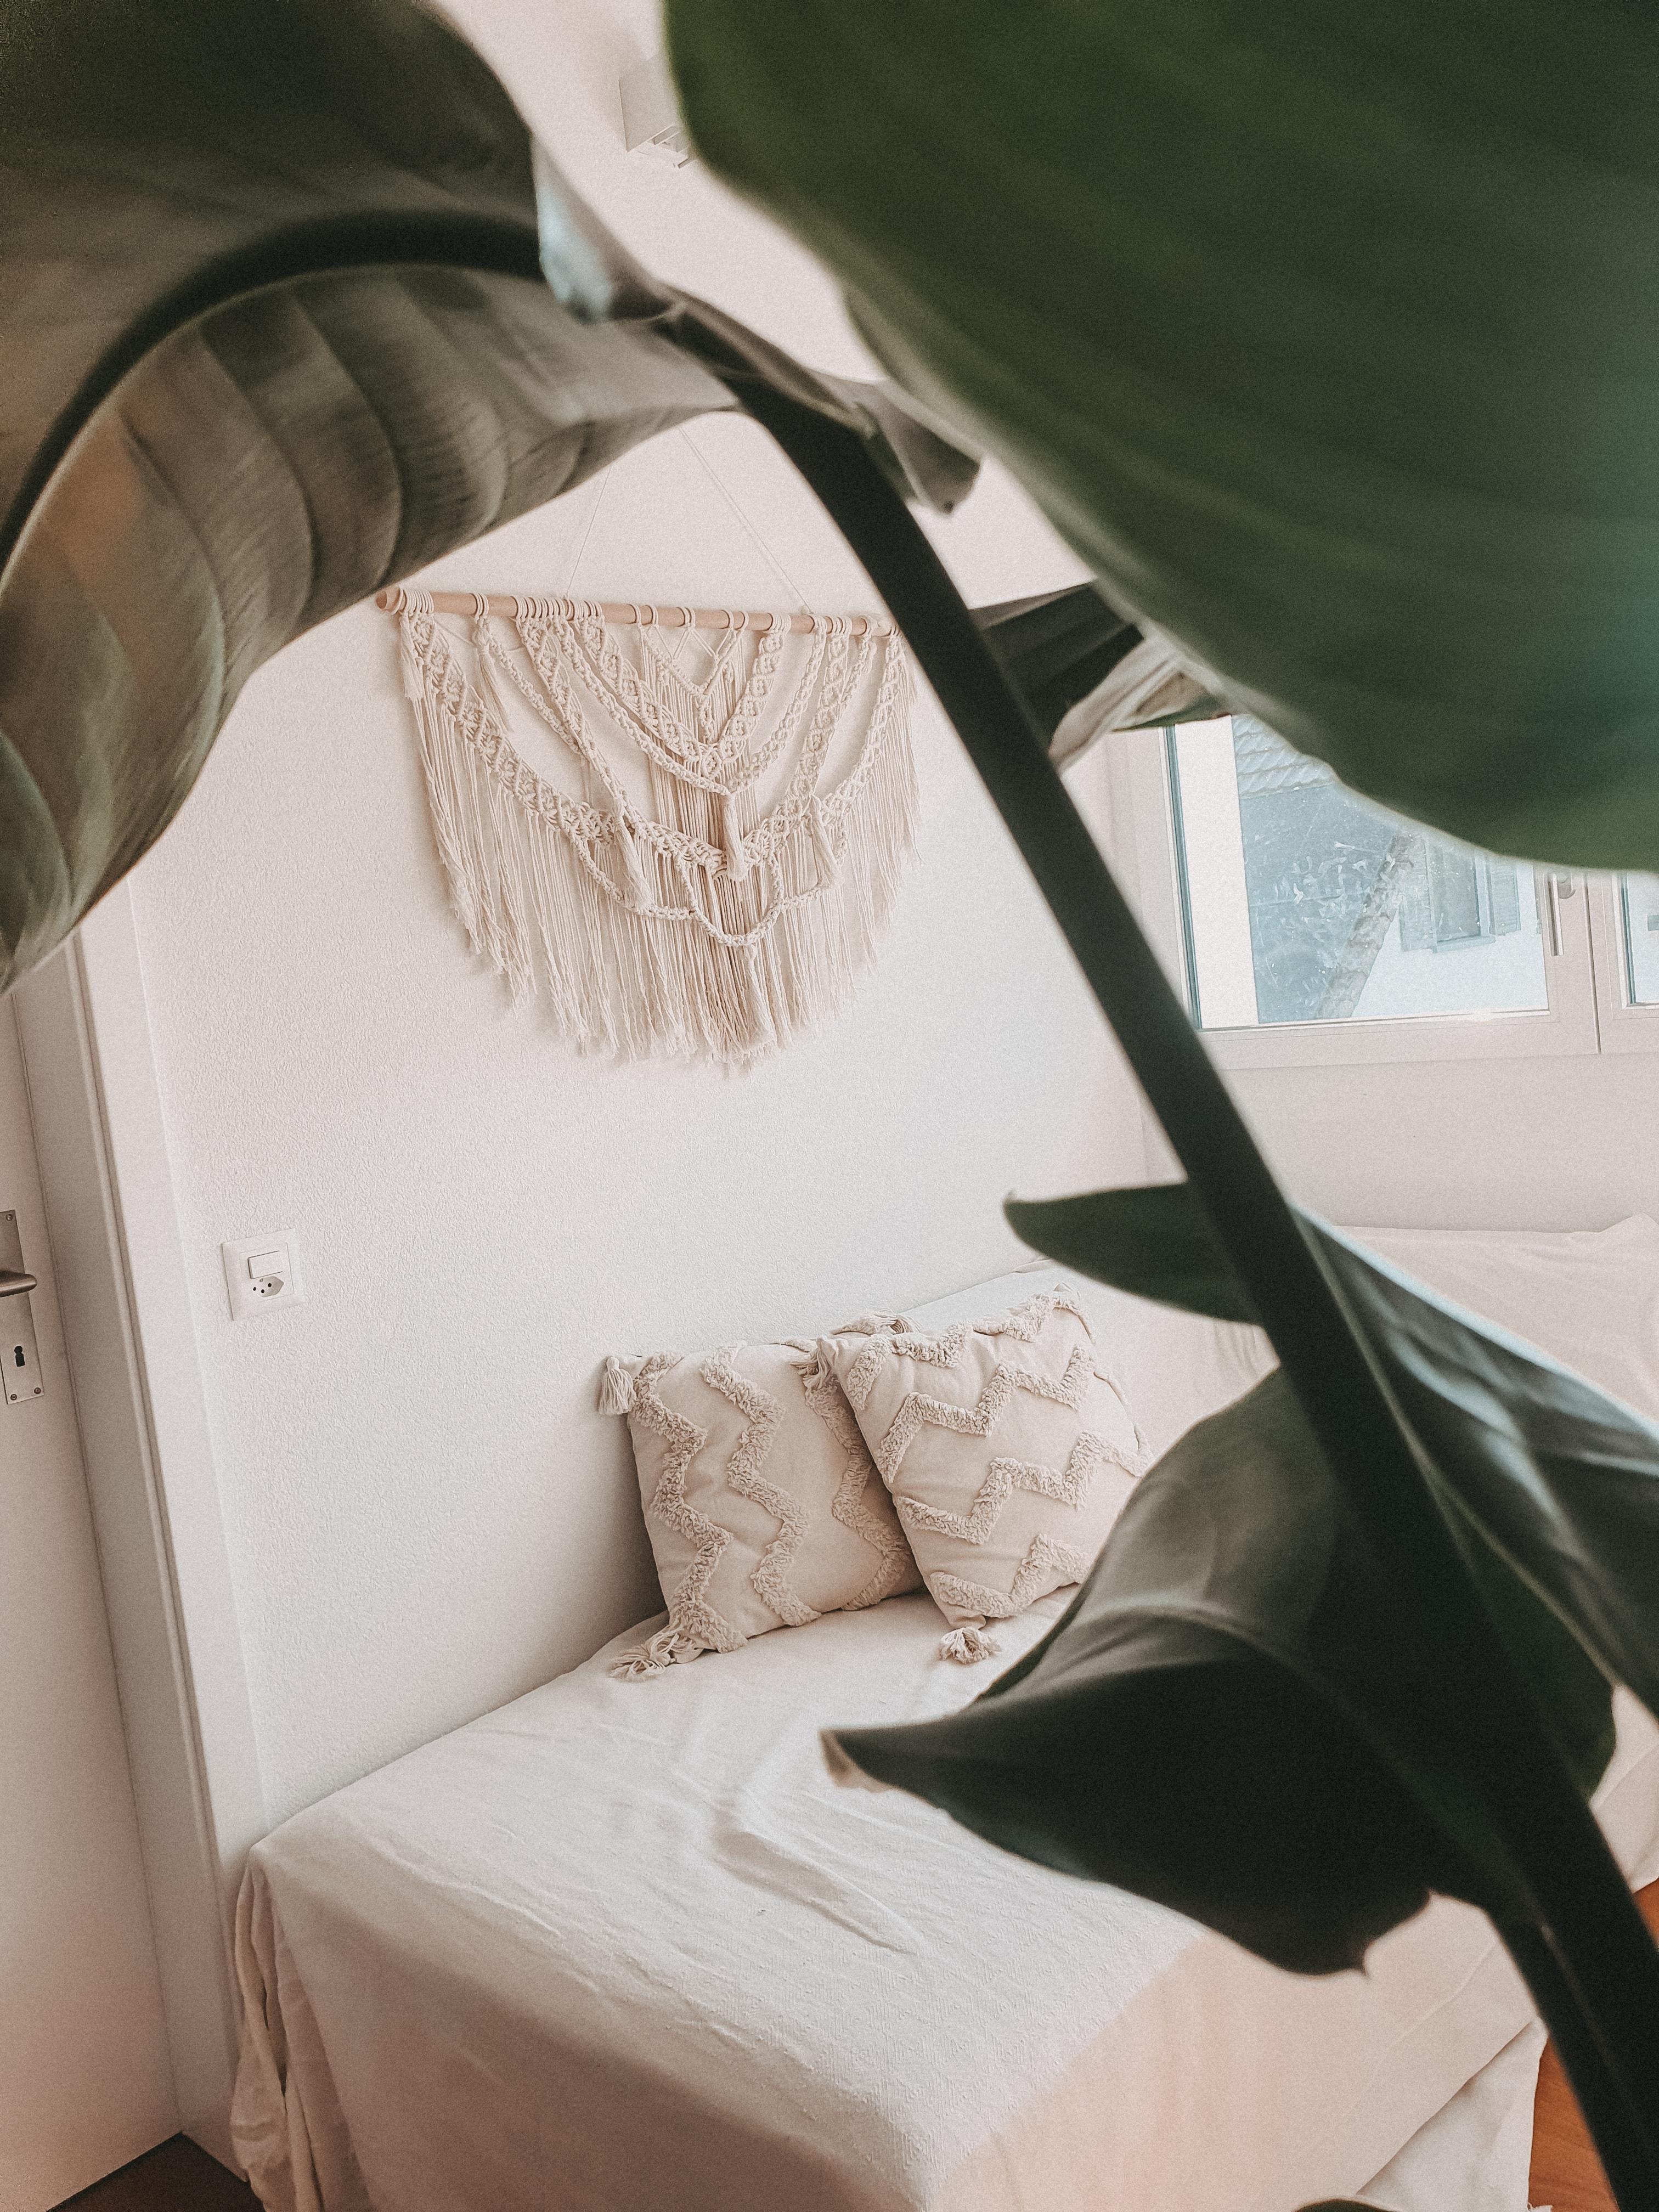 Wanddeko für mehr Gemütlichkeit ✌️
#wanddeko #livingchallenge #couchstyle